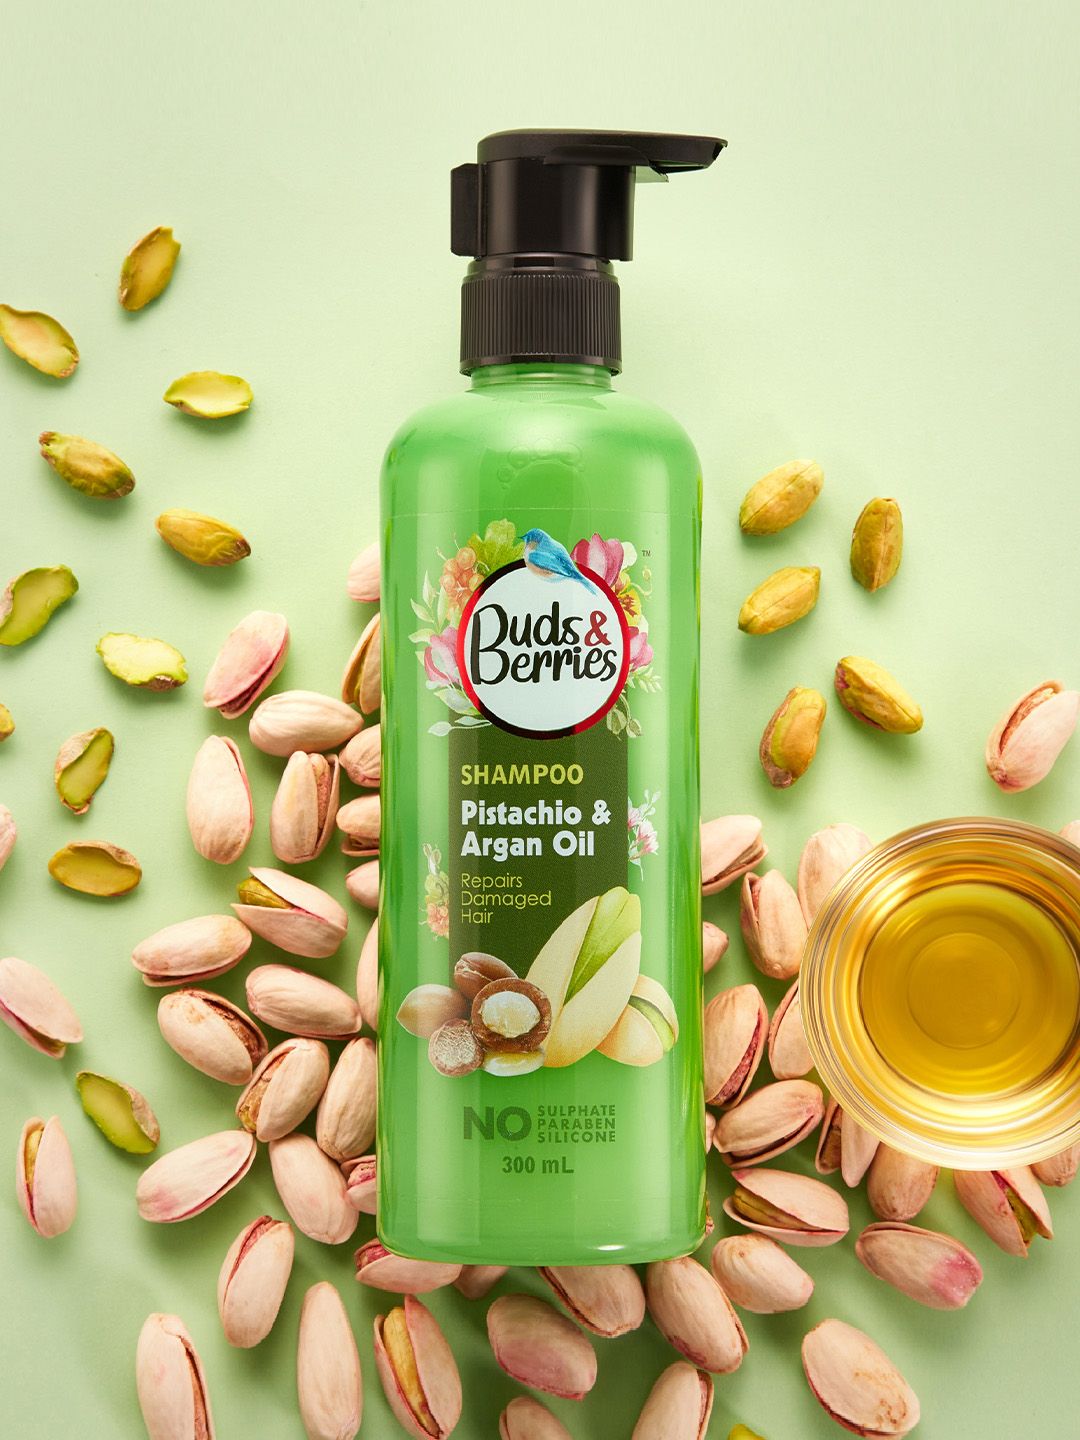 Buds & Berries Pistachio & Argan Oil Damage Repair Shampoo - 300 ml Price in India